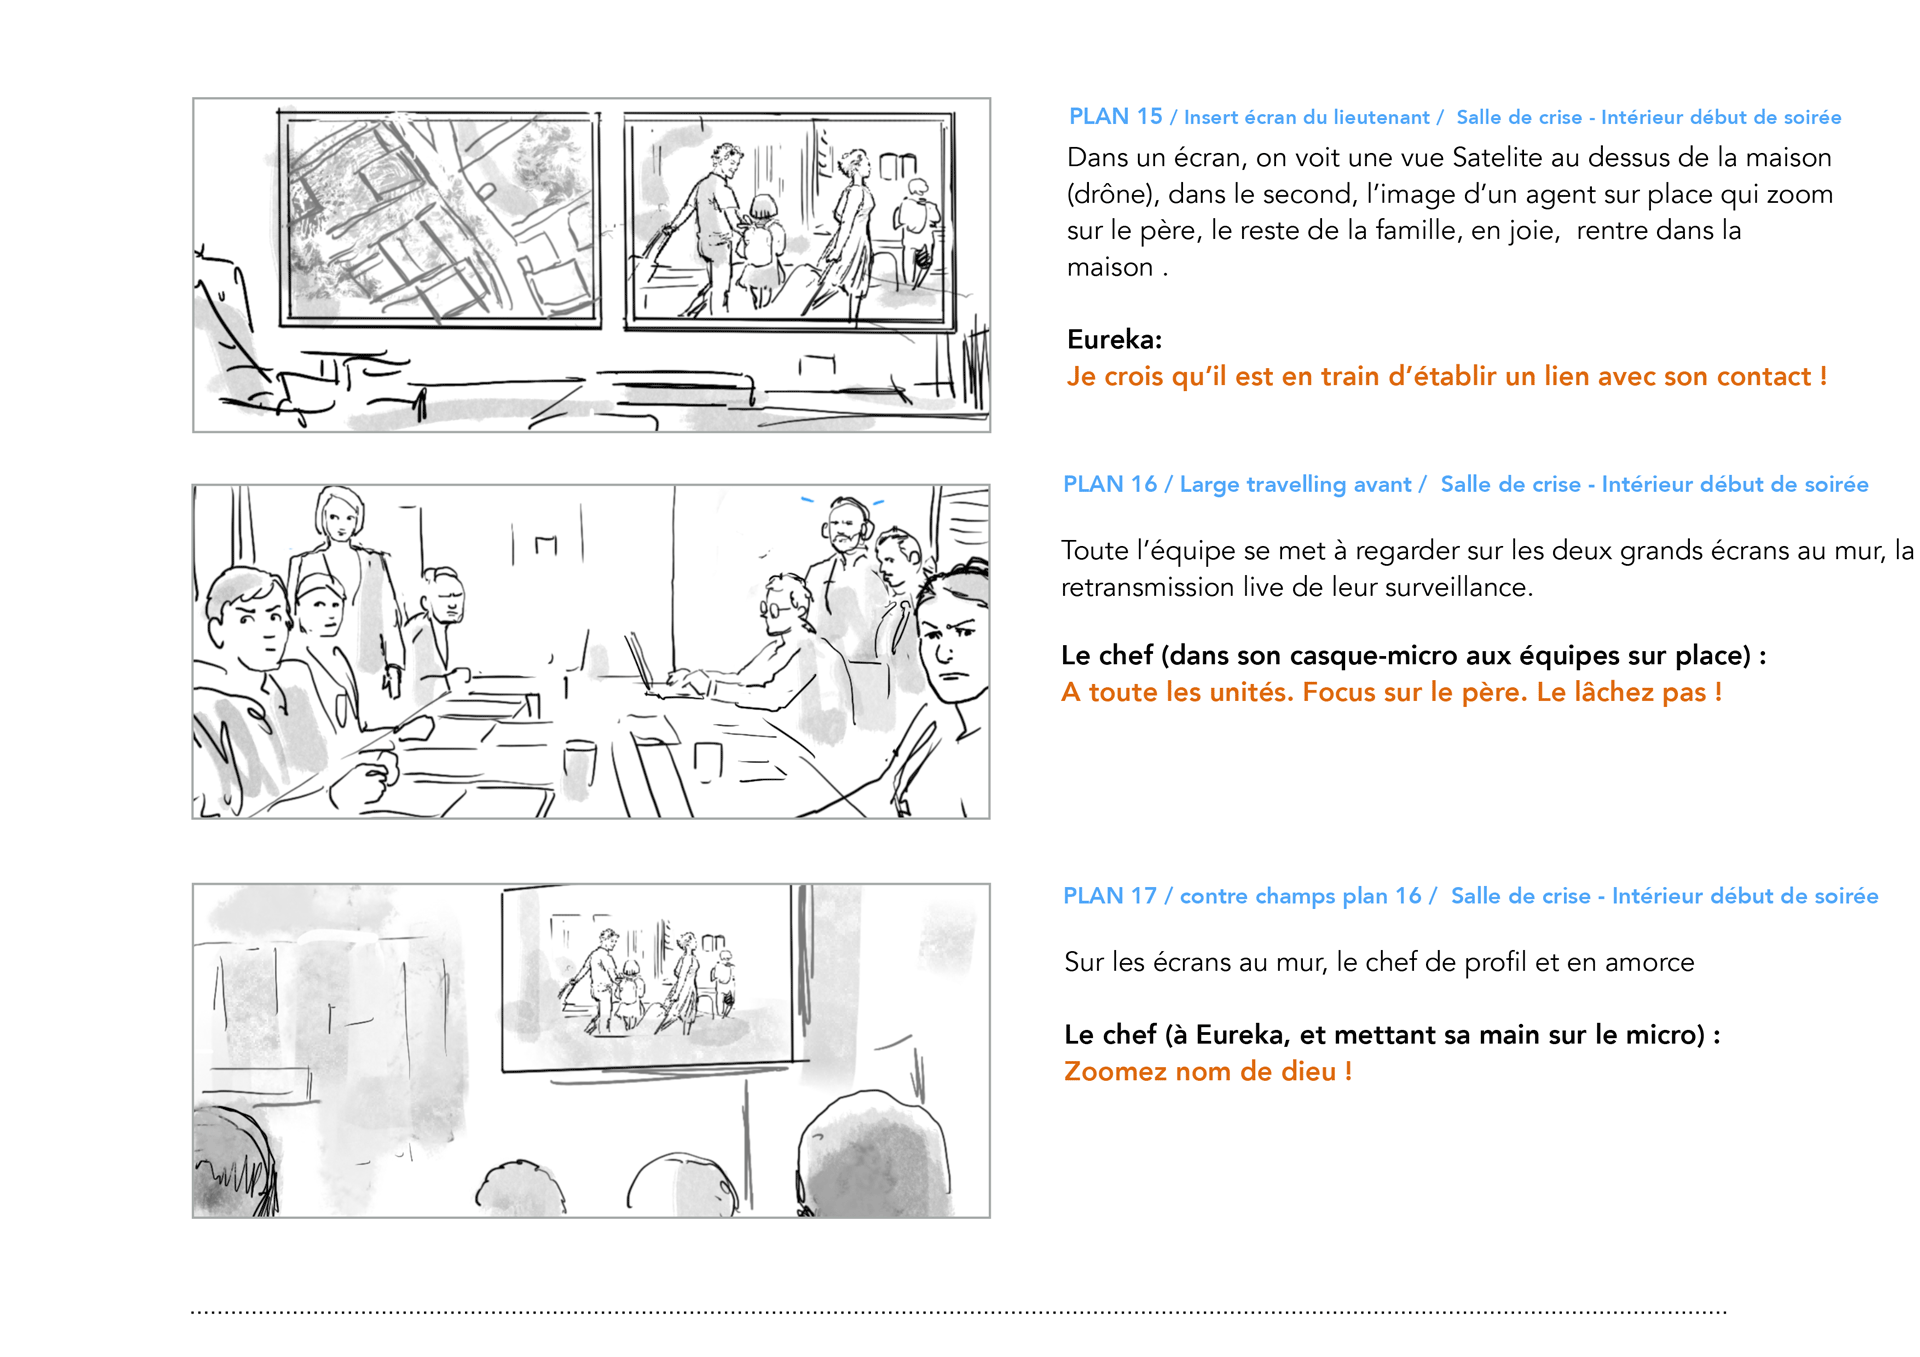 HomeExchange, Opération Lambert, storyboard, page 07